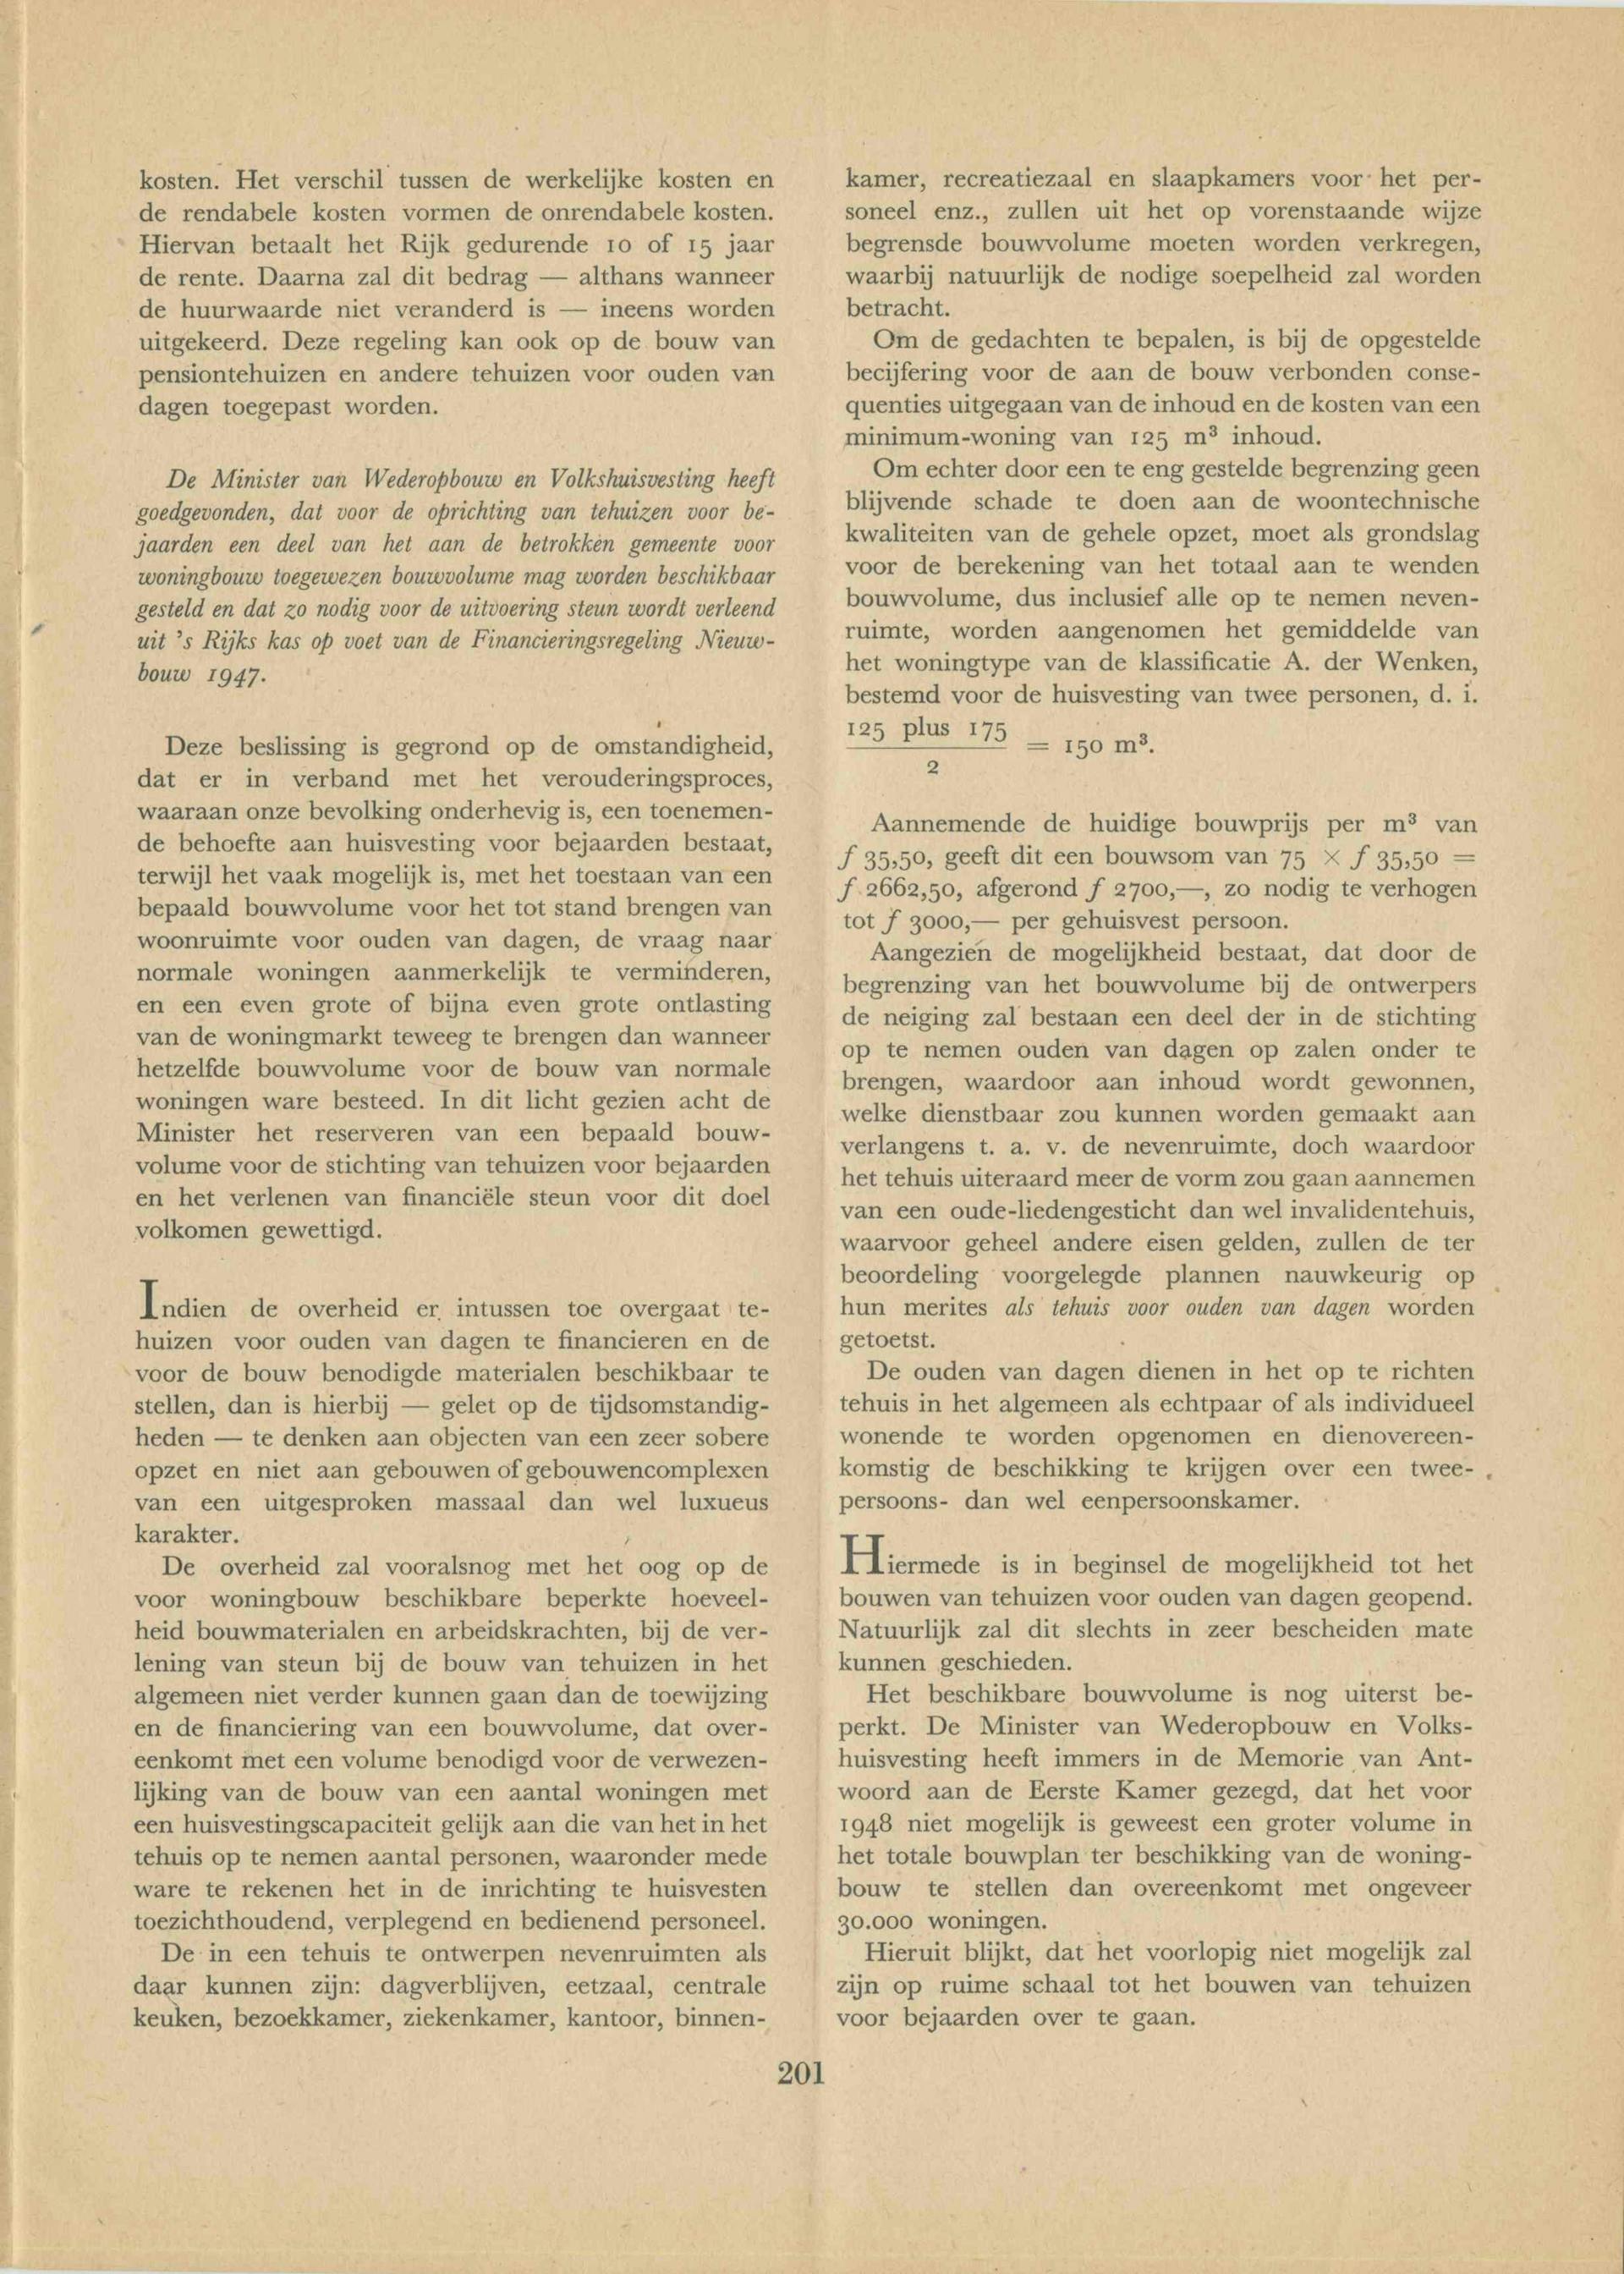  H.G. van Beusekom, ‘Mogelijkheden voor de huisvesting van bejaarden ‘. Tijdschrift voor Maatschappelijk Werk, 1948. Collectie Het Nieuwe Instituut, TIJX d39-c 